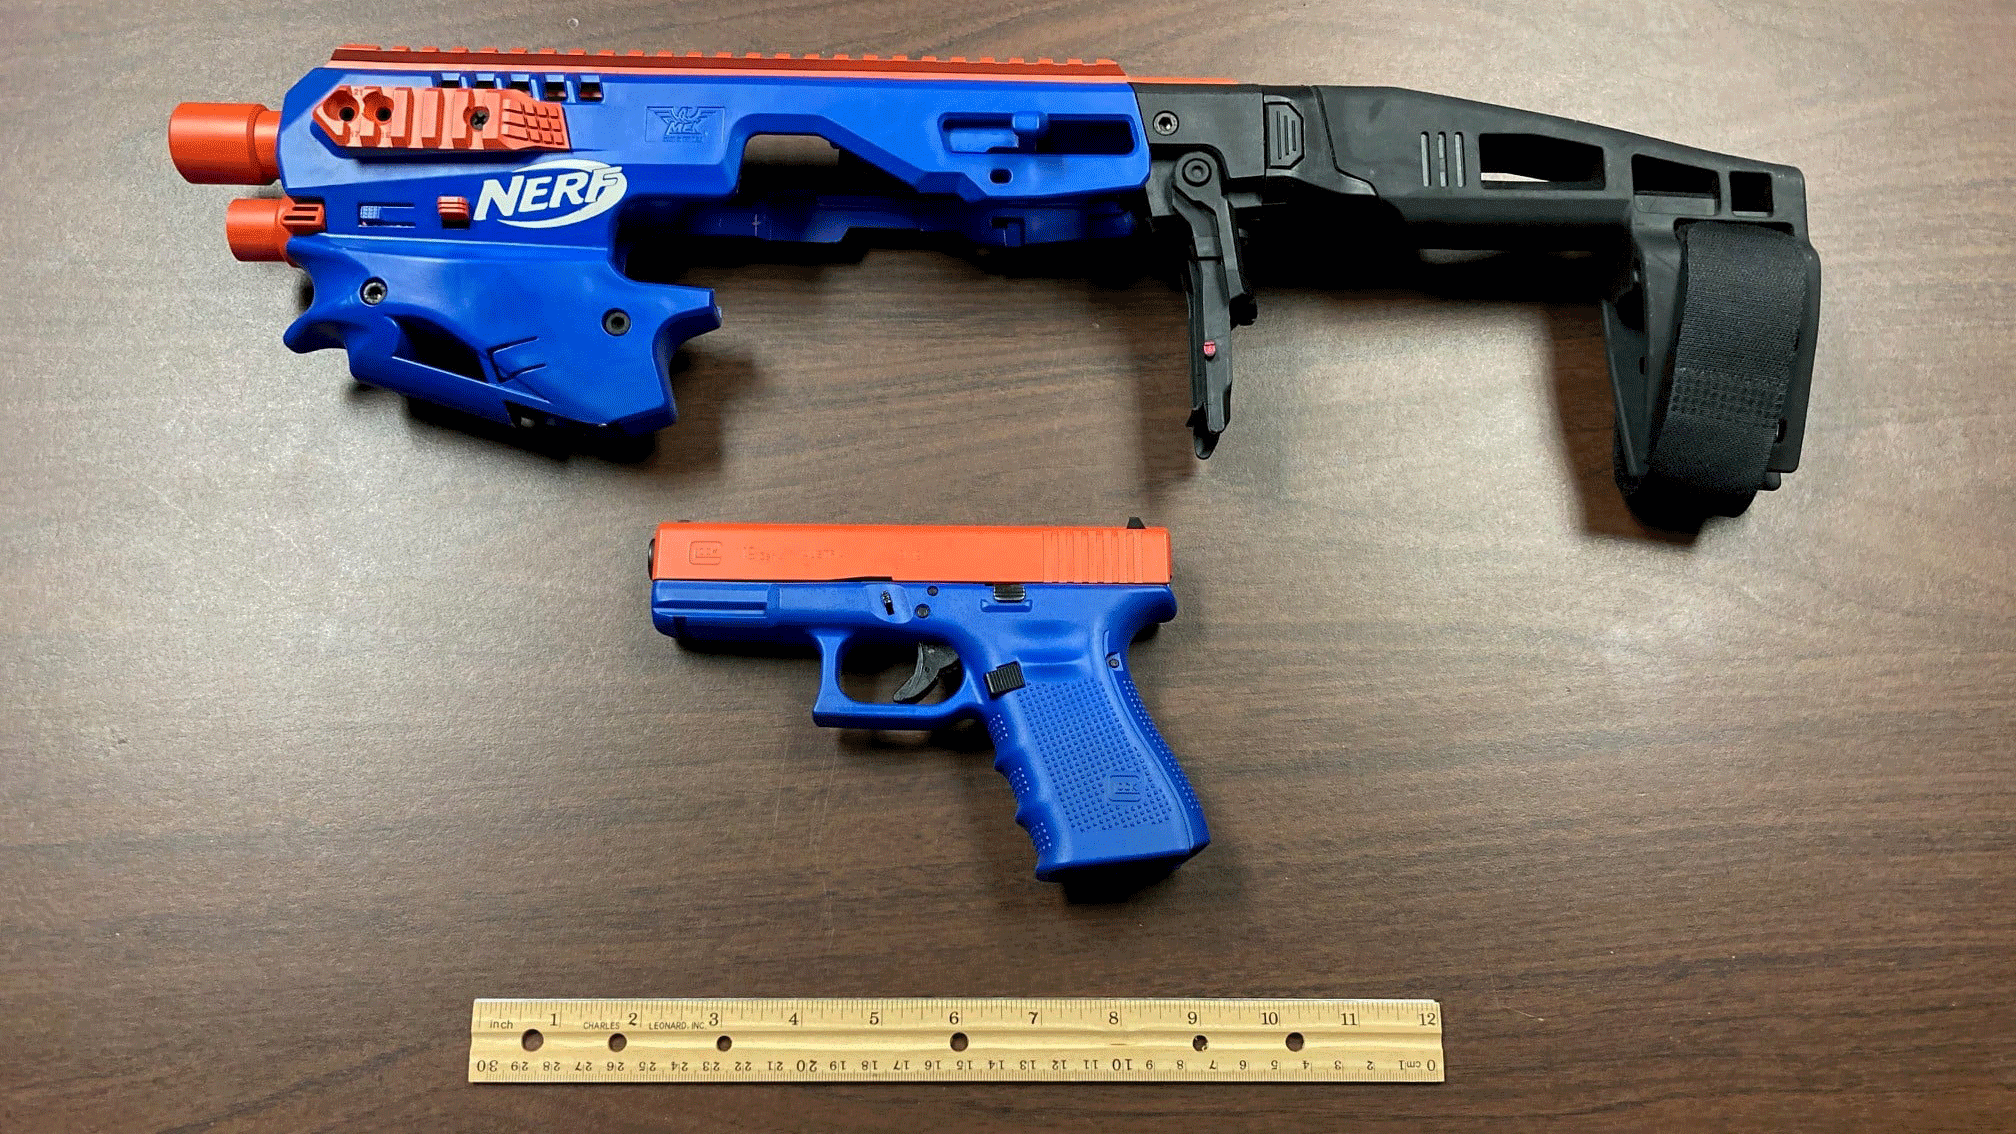 importere mundstykke Mængde penge Real gun disguised as Nerf toy seized in North Carolina drug raid